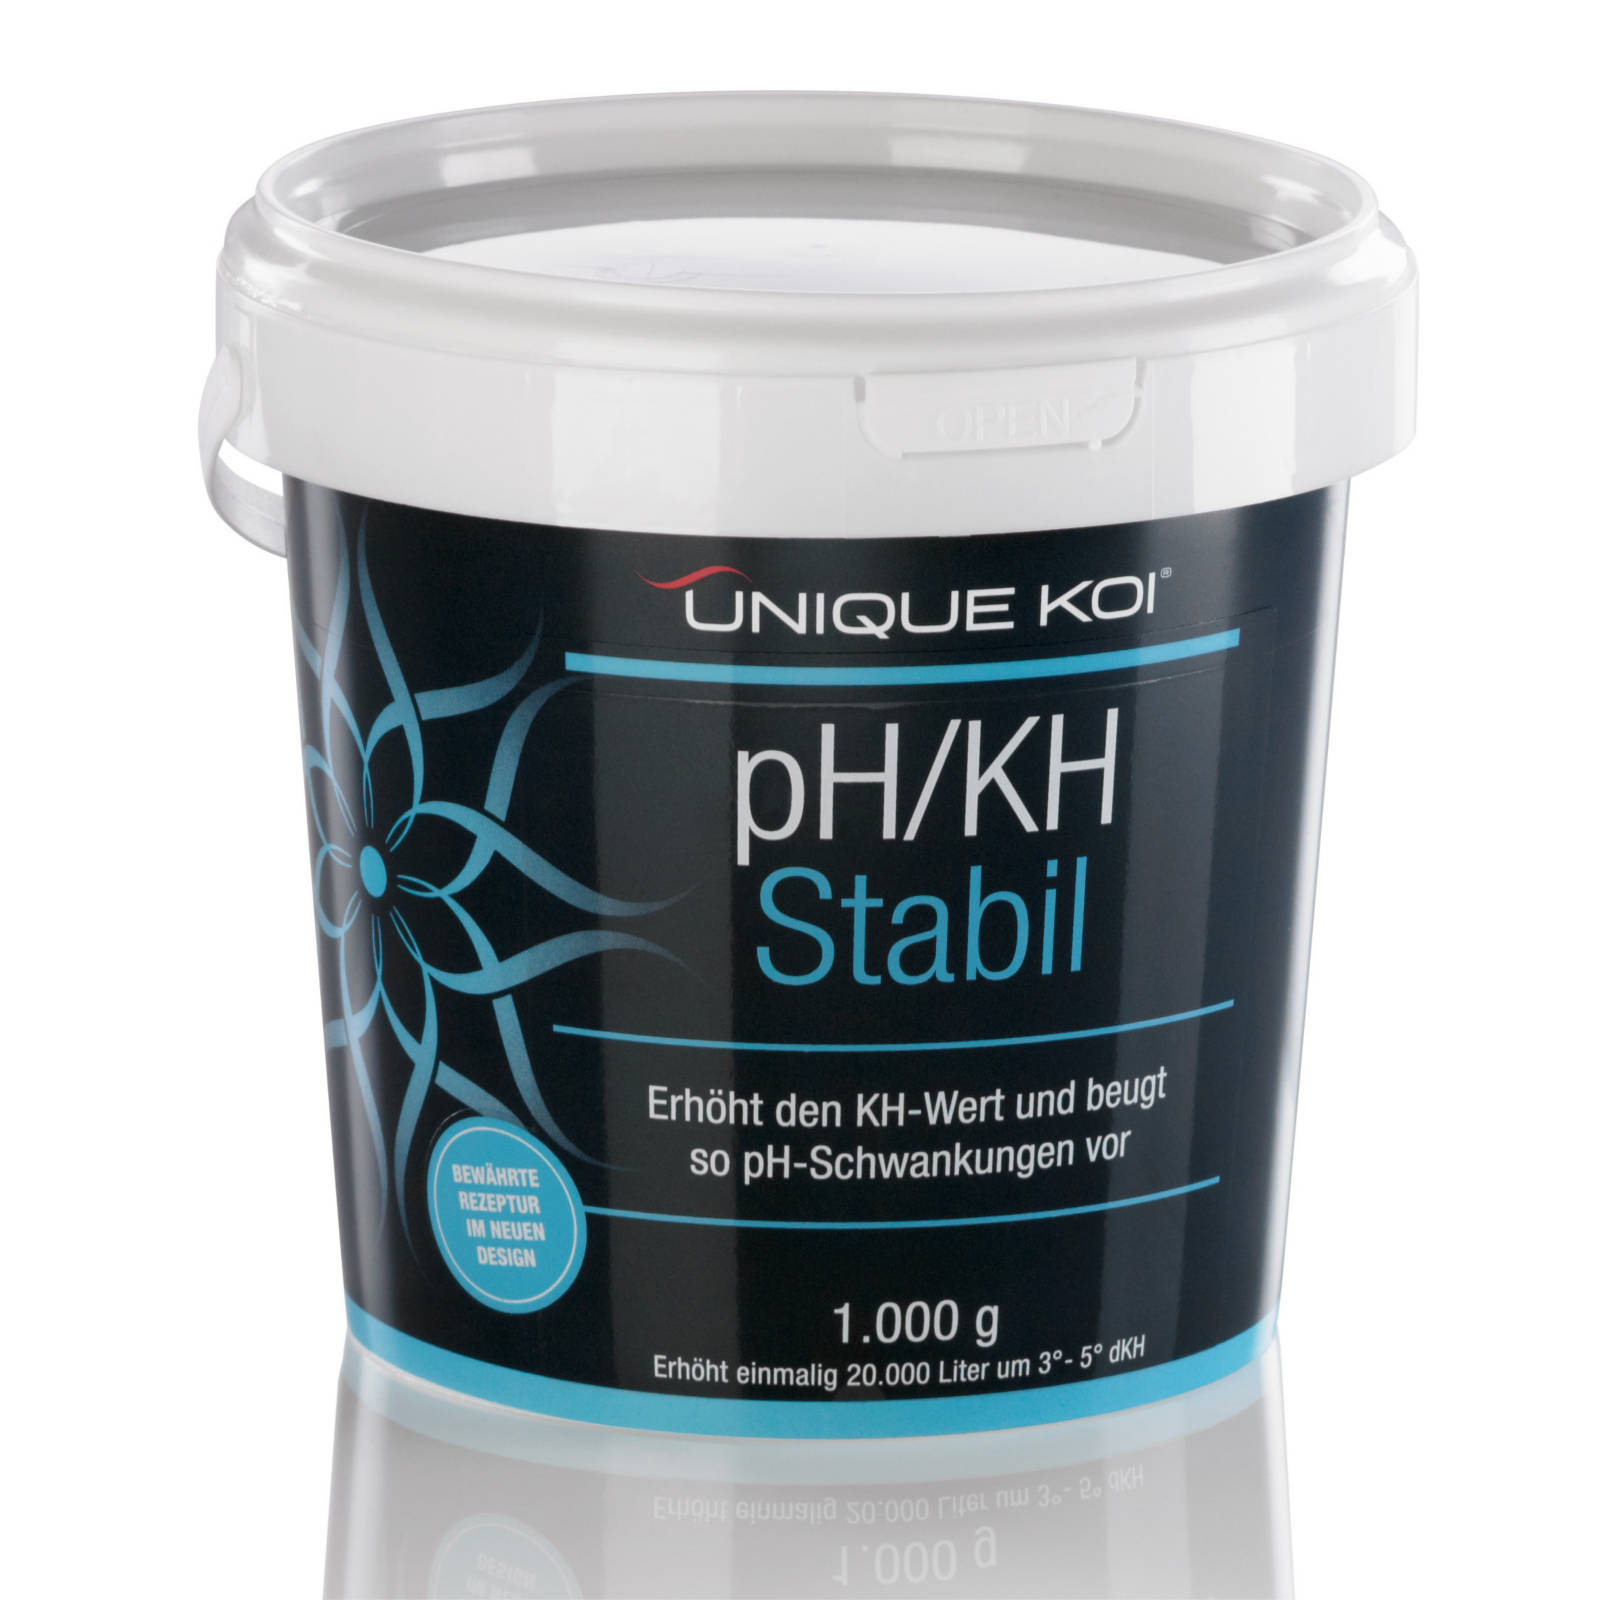 Unique Koi pH/KH Stabil Erhöht den KH-Wert und beugt so pH-Schwankungen vor 500g für 10000l